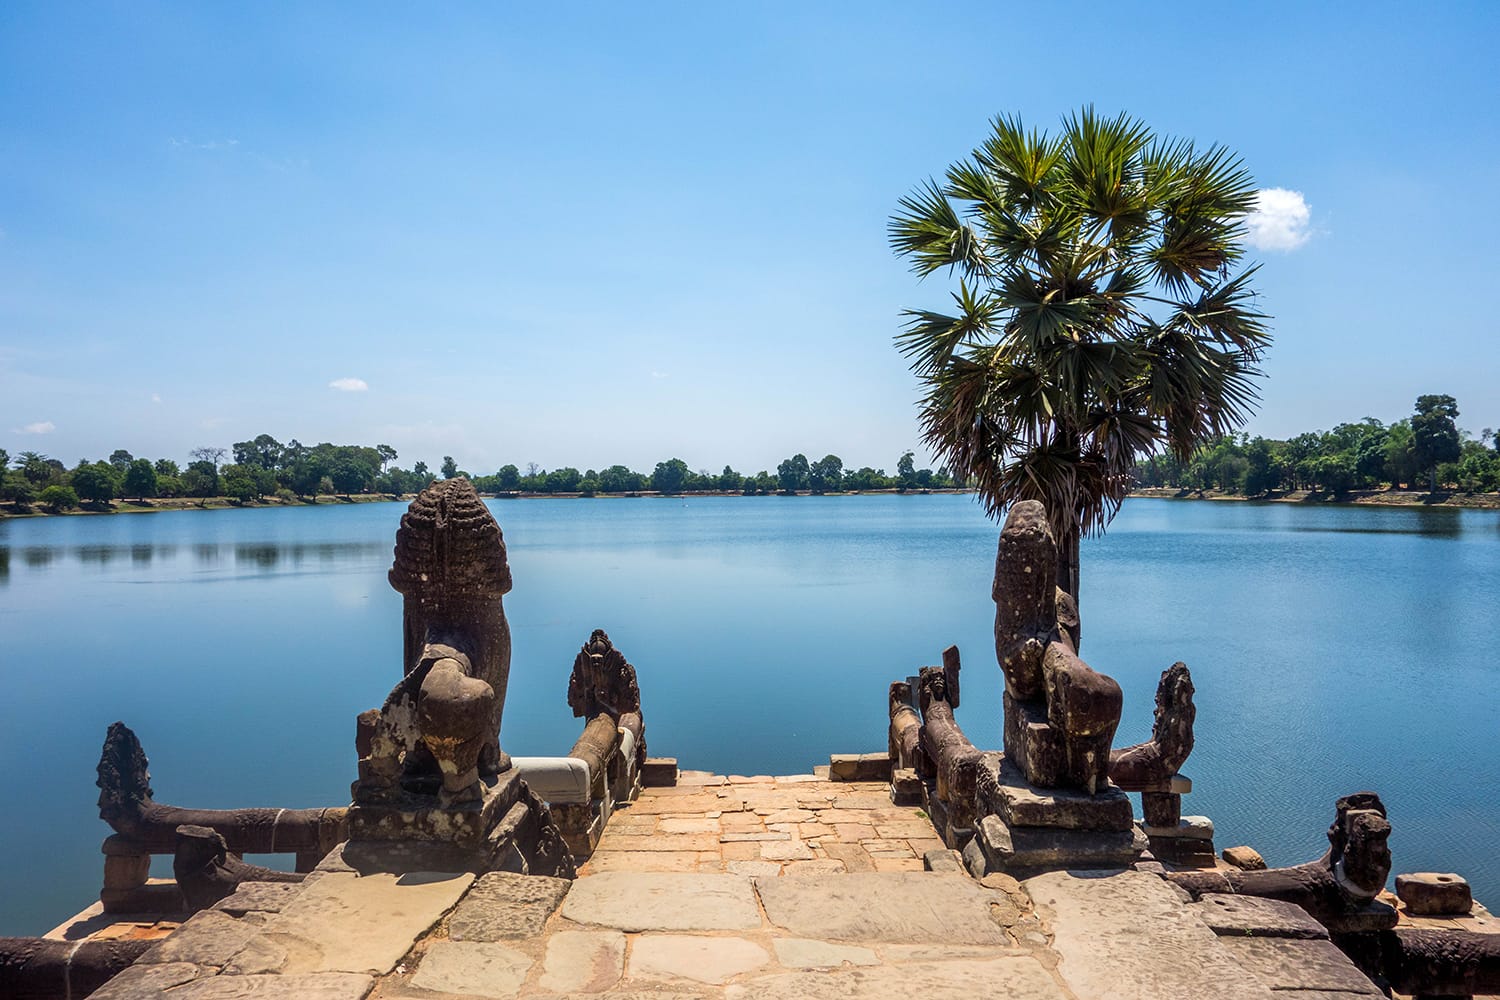 Srah Srang Lake at Angkor Wat in Cambodia